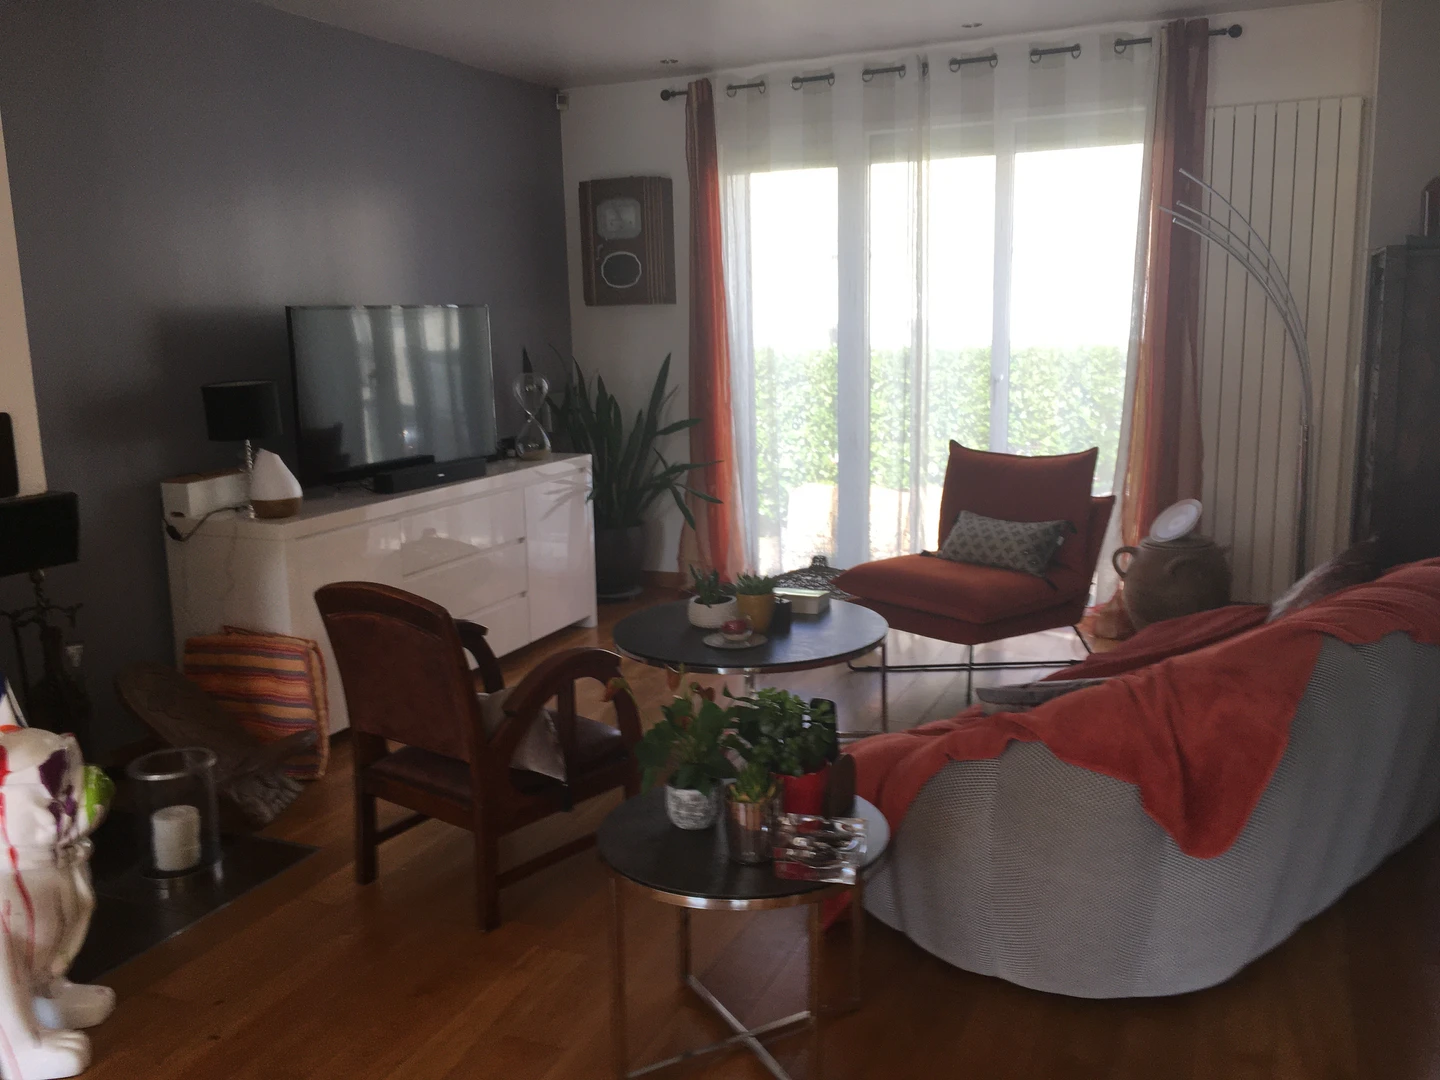 Chambre à louer dans un appartement en colocation à Paris